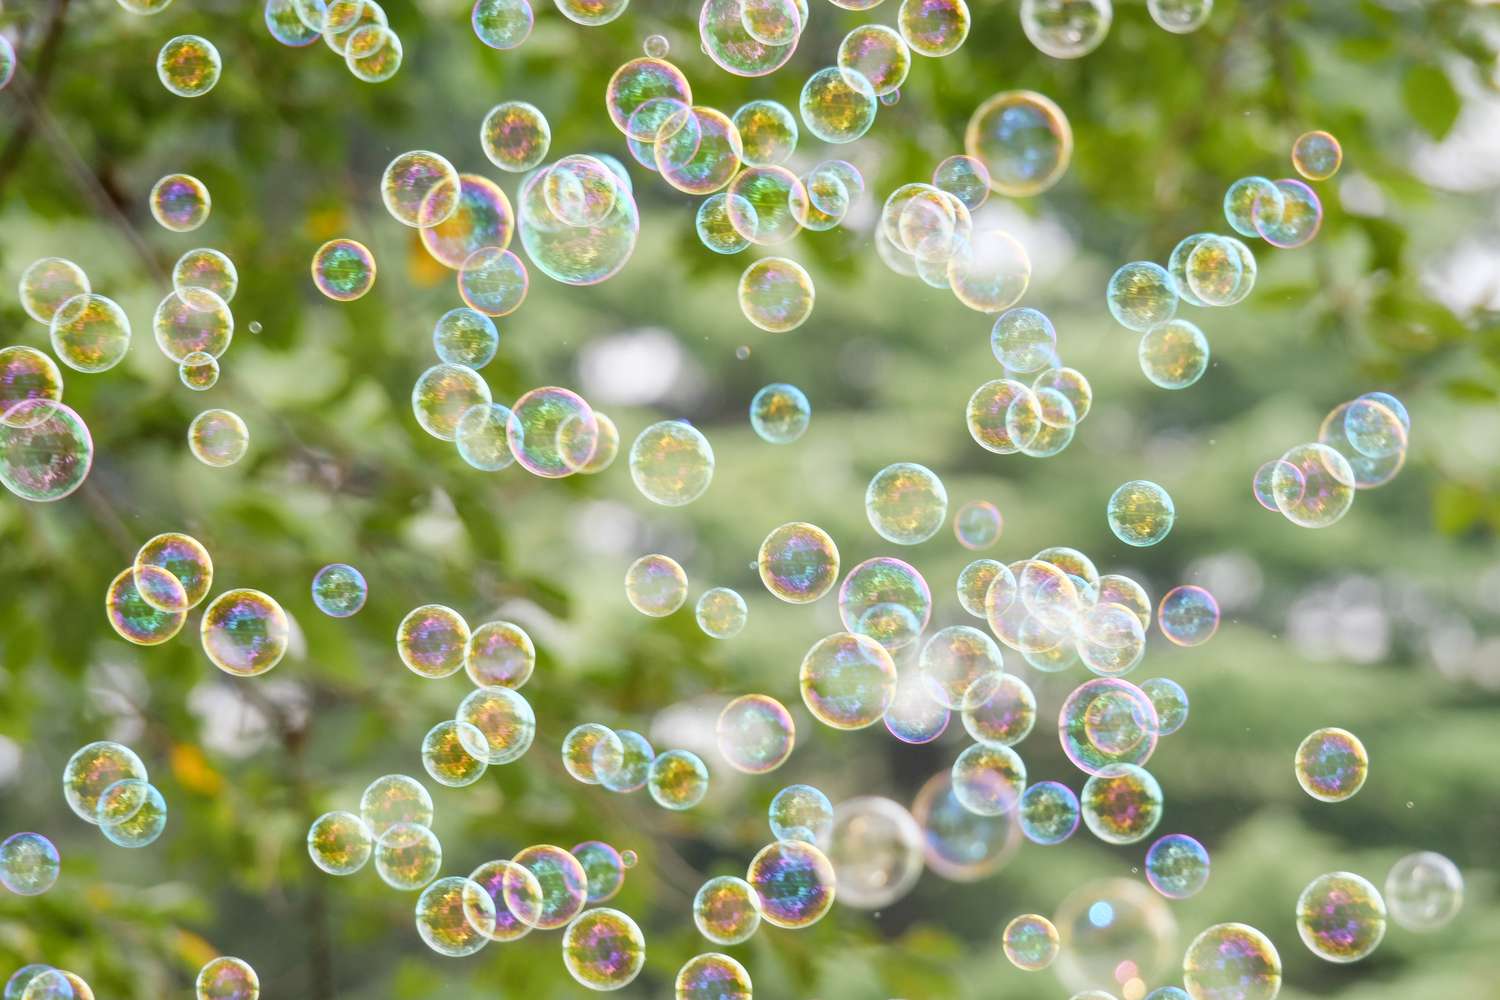 So many bubbles